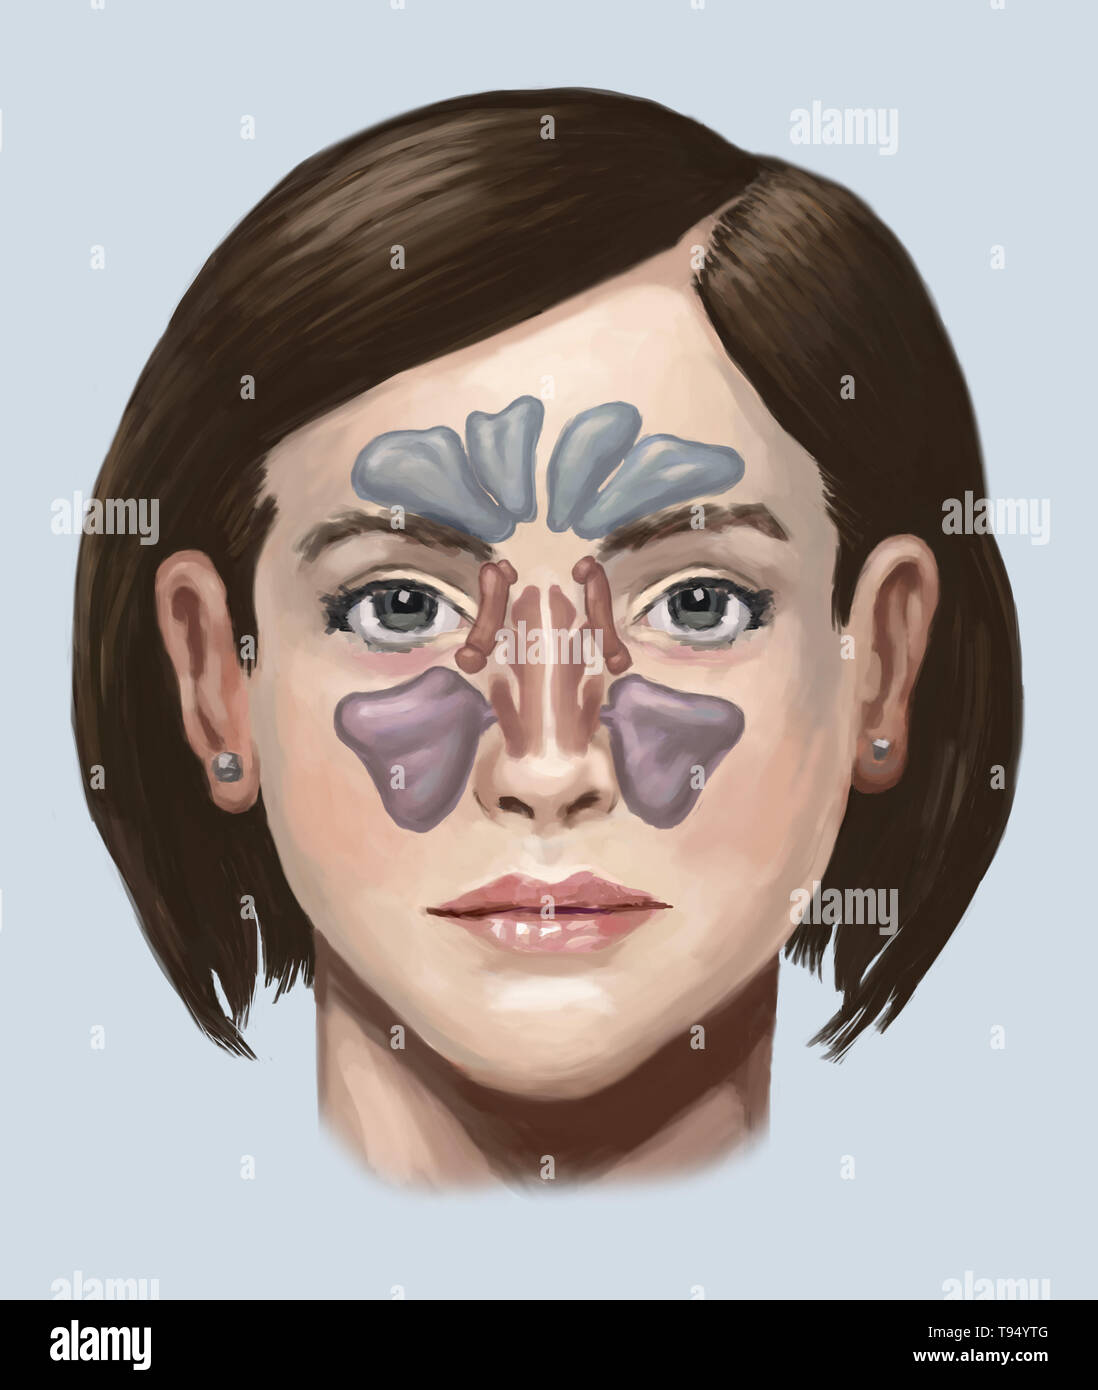 Illustrazione dei seni. Da cima a fondo, essi includono: seno frontale, il sphenoidal sinus, la sinusite etmoide sinusale e del seno mascellare. Foto Stock